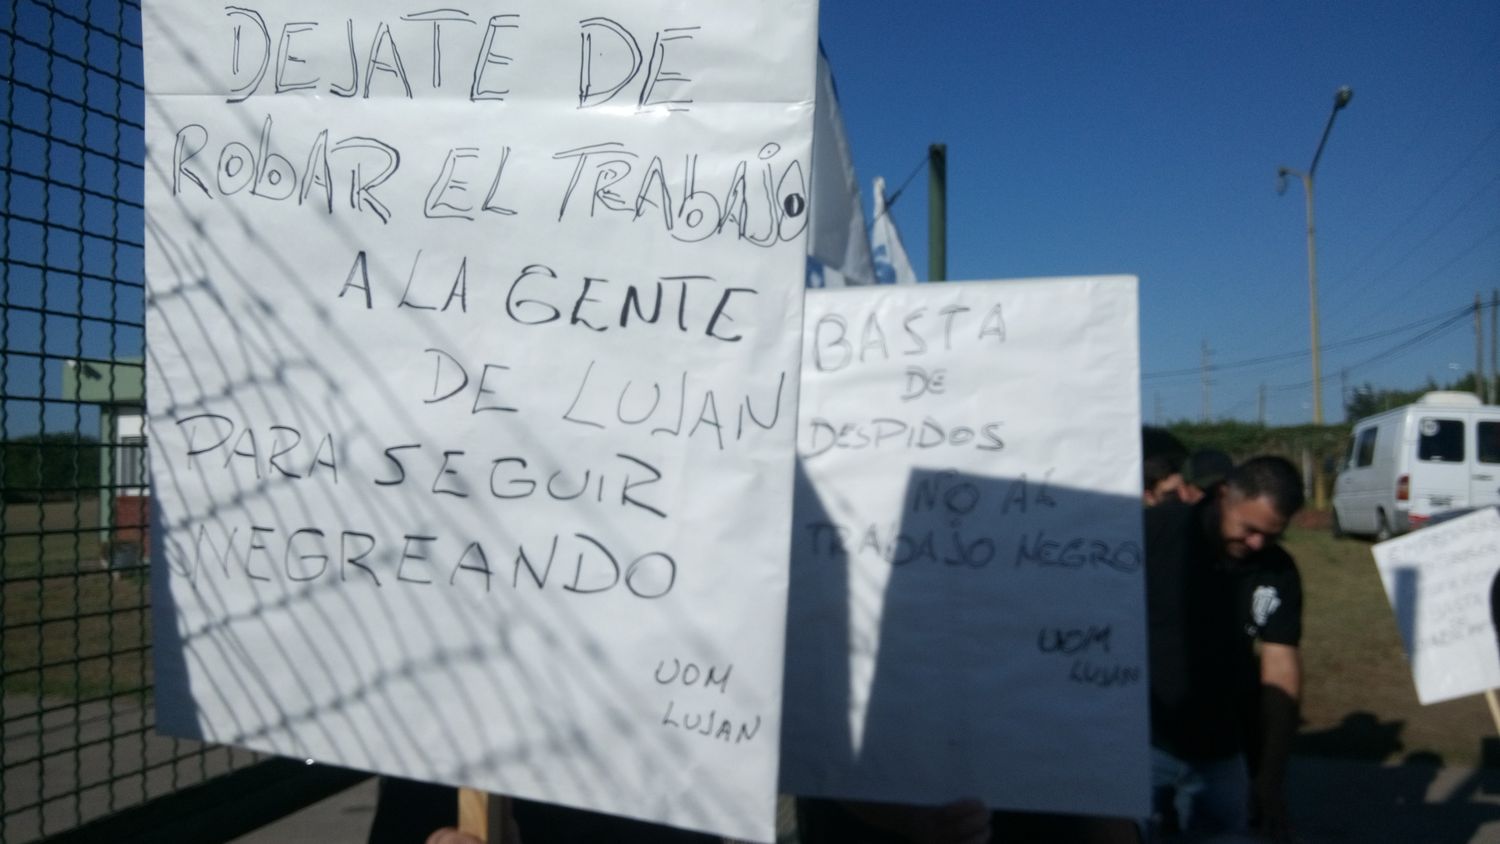 Luján: Protesta por despidos en la metalúrgica Industrias Delgado